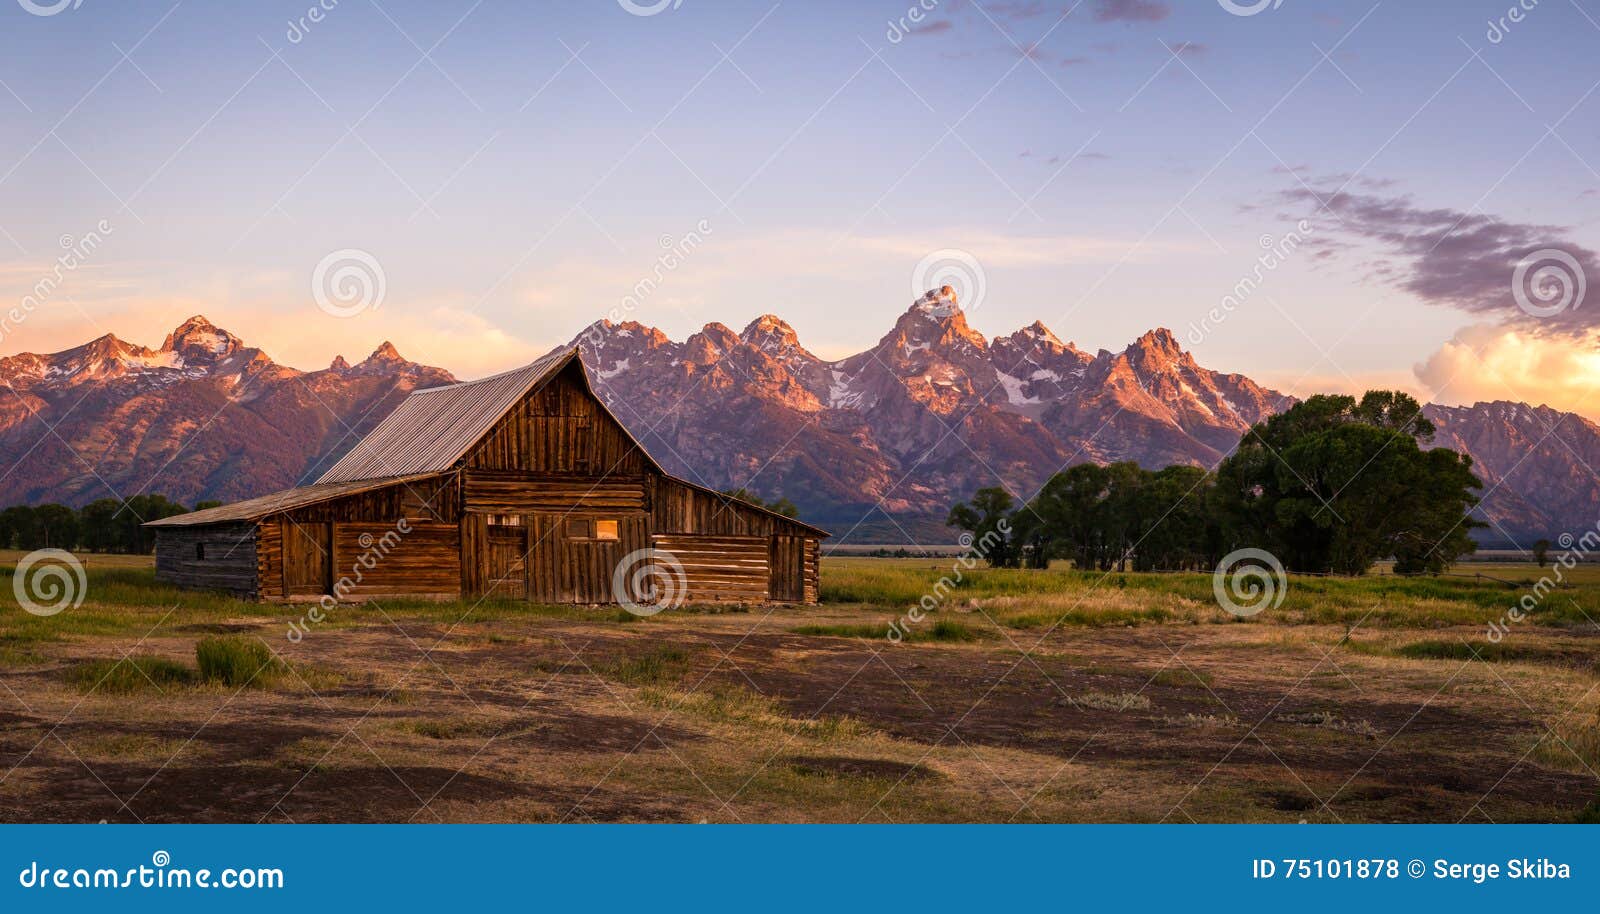 moulton barn on mormon row, grand teton national park, wyoming